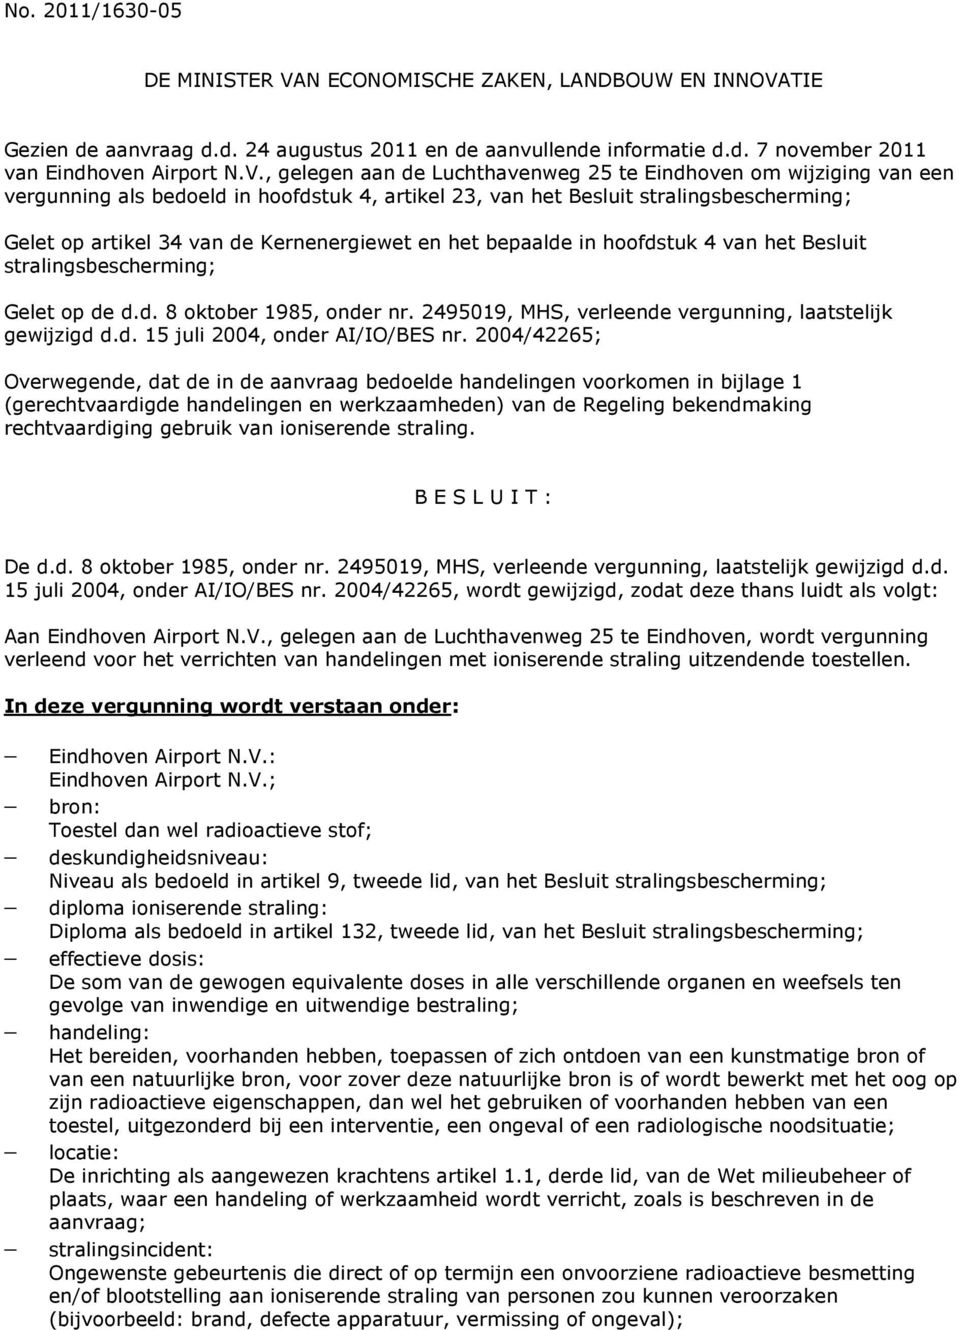 TIE Gezien de aanvraag d.d. 24 augustus 2011 en de aanvullende informatie d.d. 7 november 2011 van Eindhoven Airport N.V.